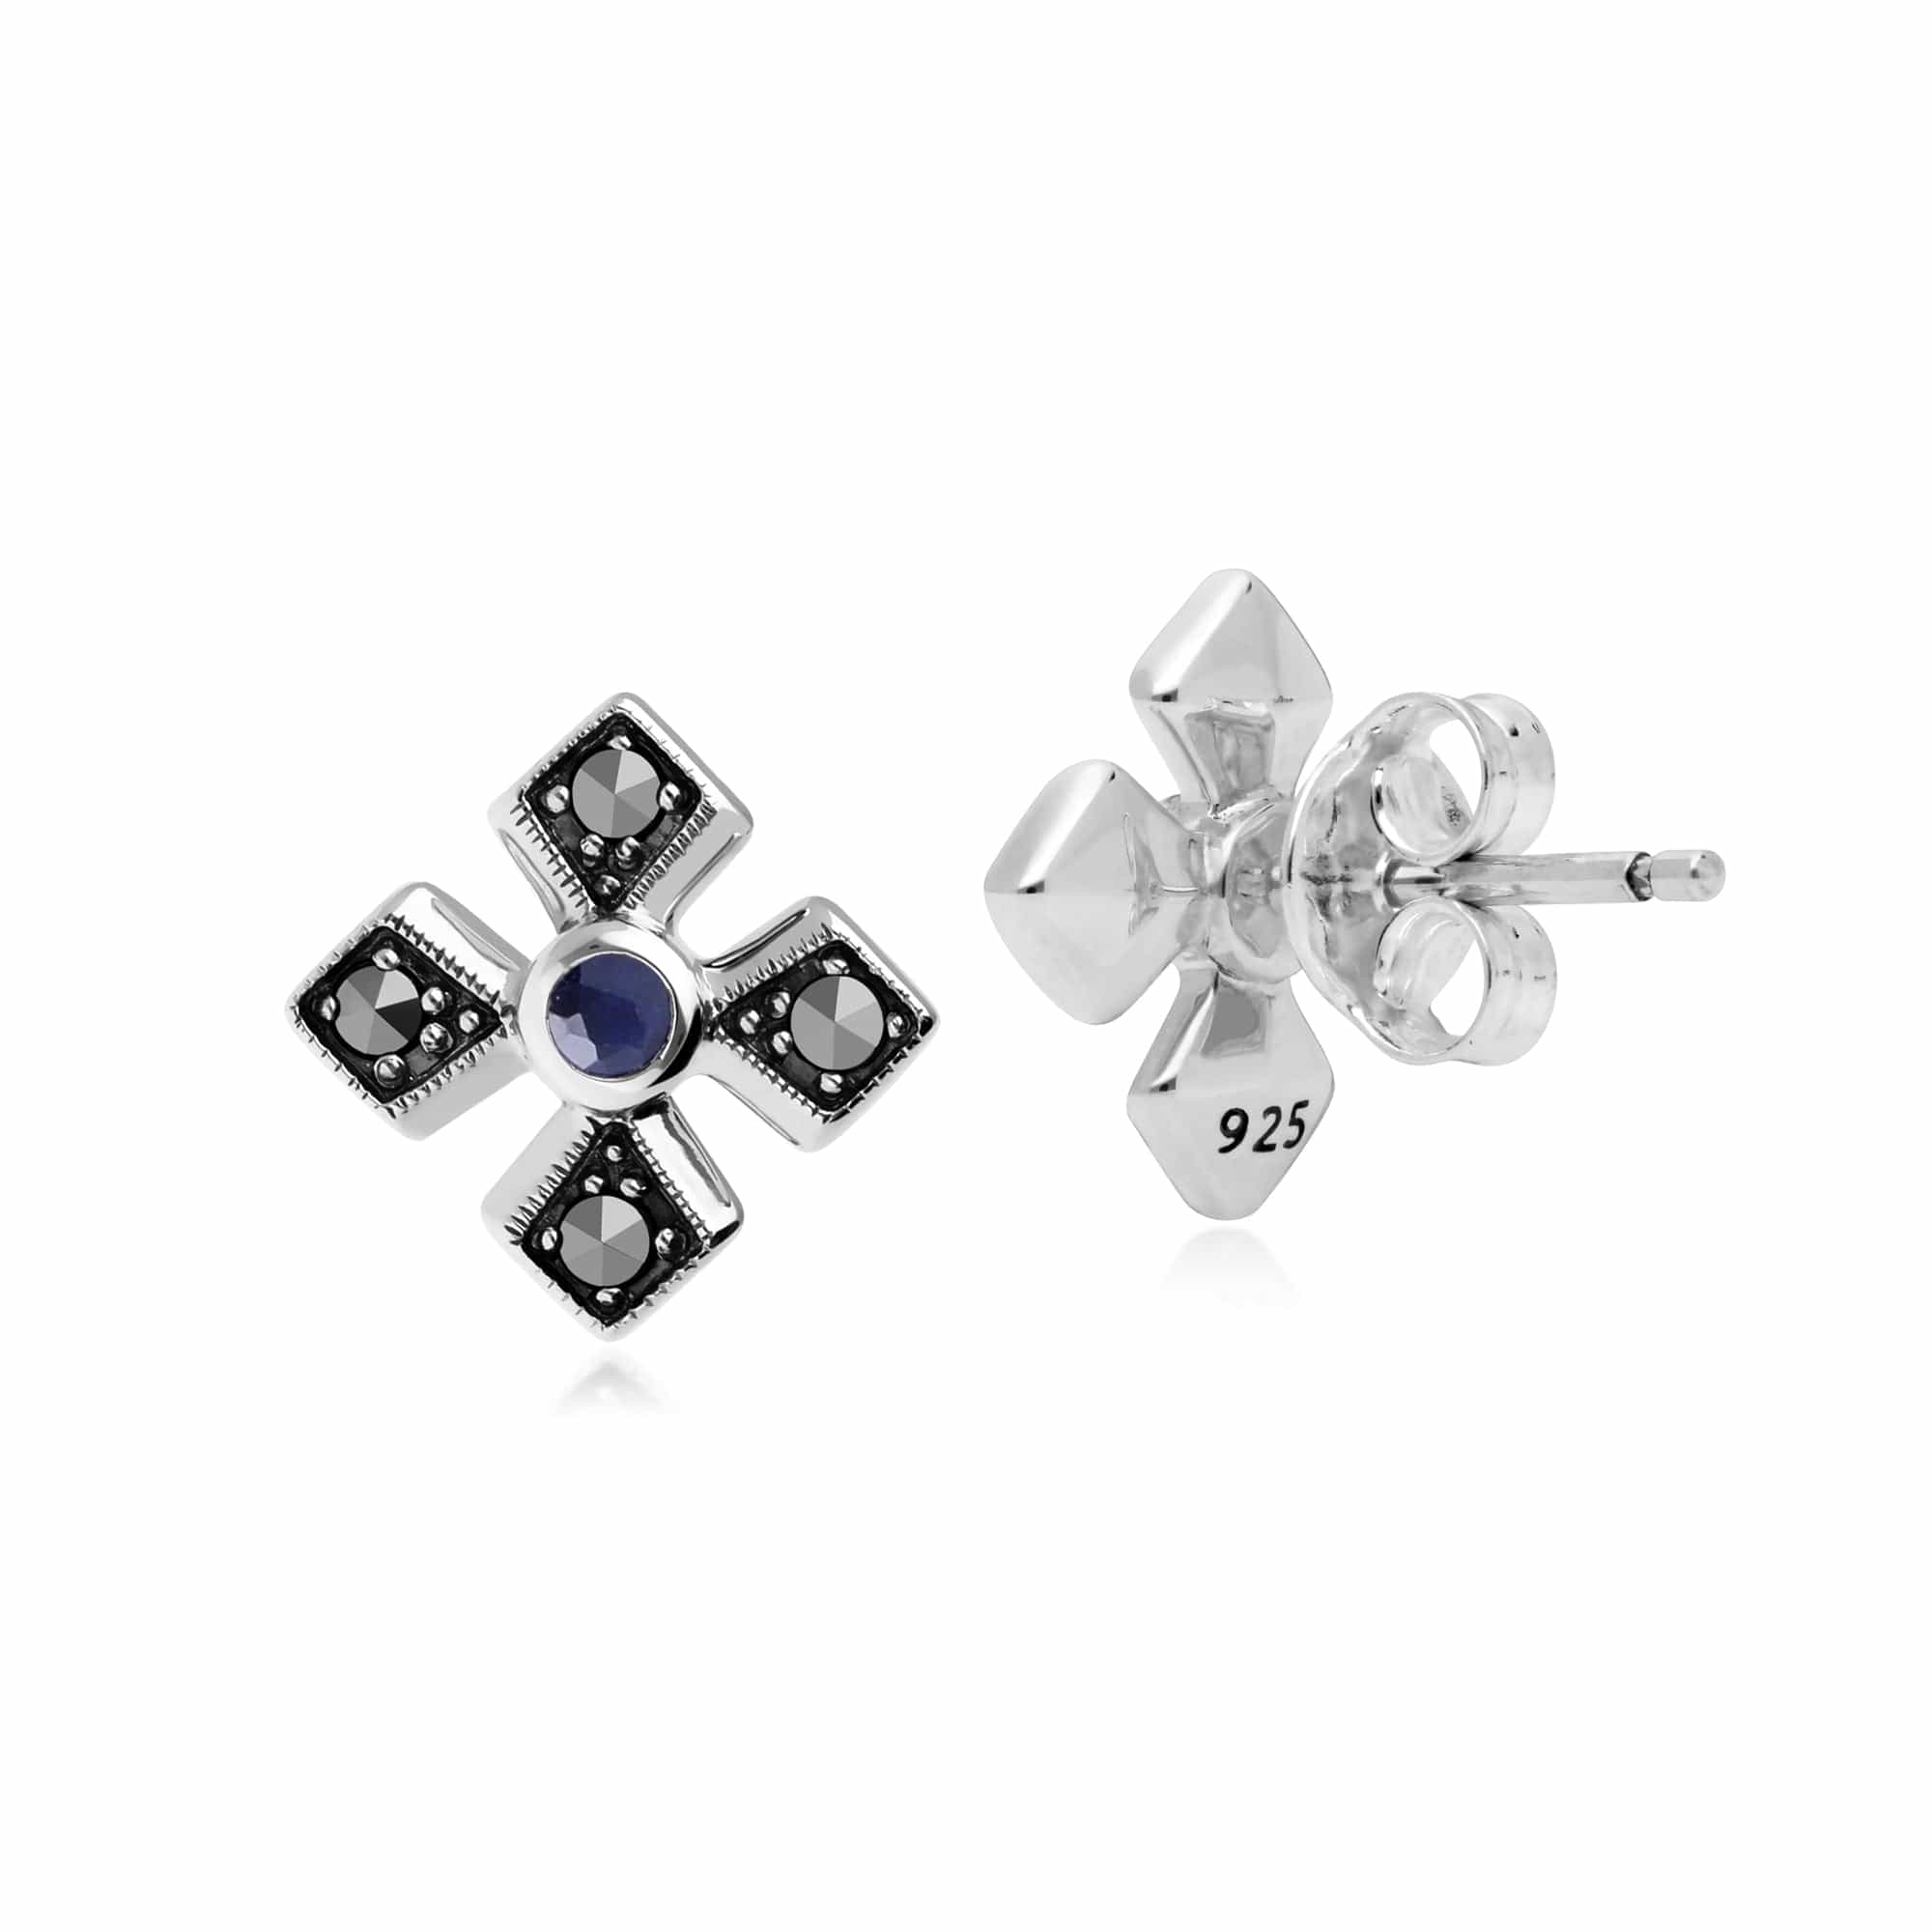 214E859702925 Gemondo Sterling Silver Marcasite & Sapphire September Birthstone Earrings 2